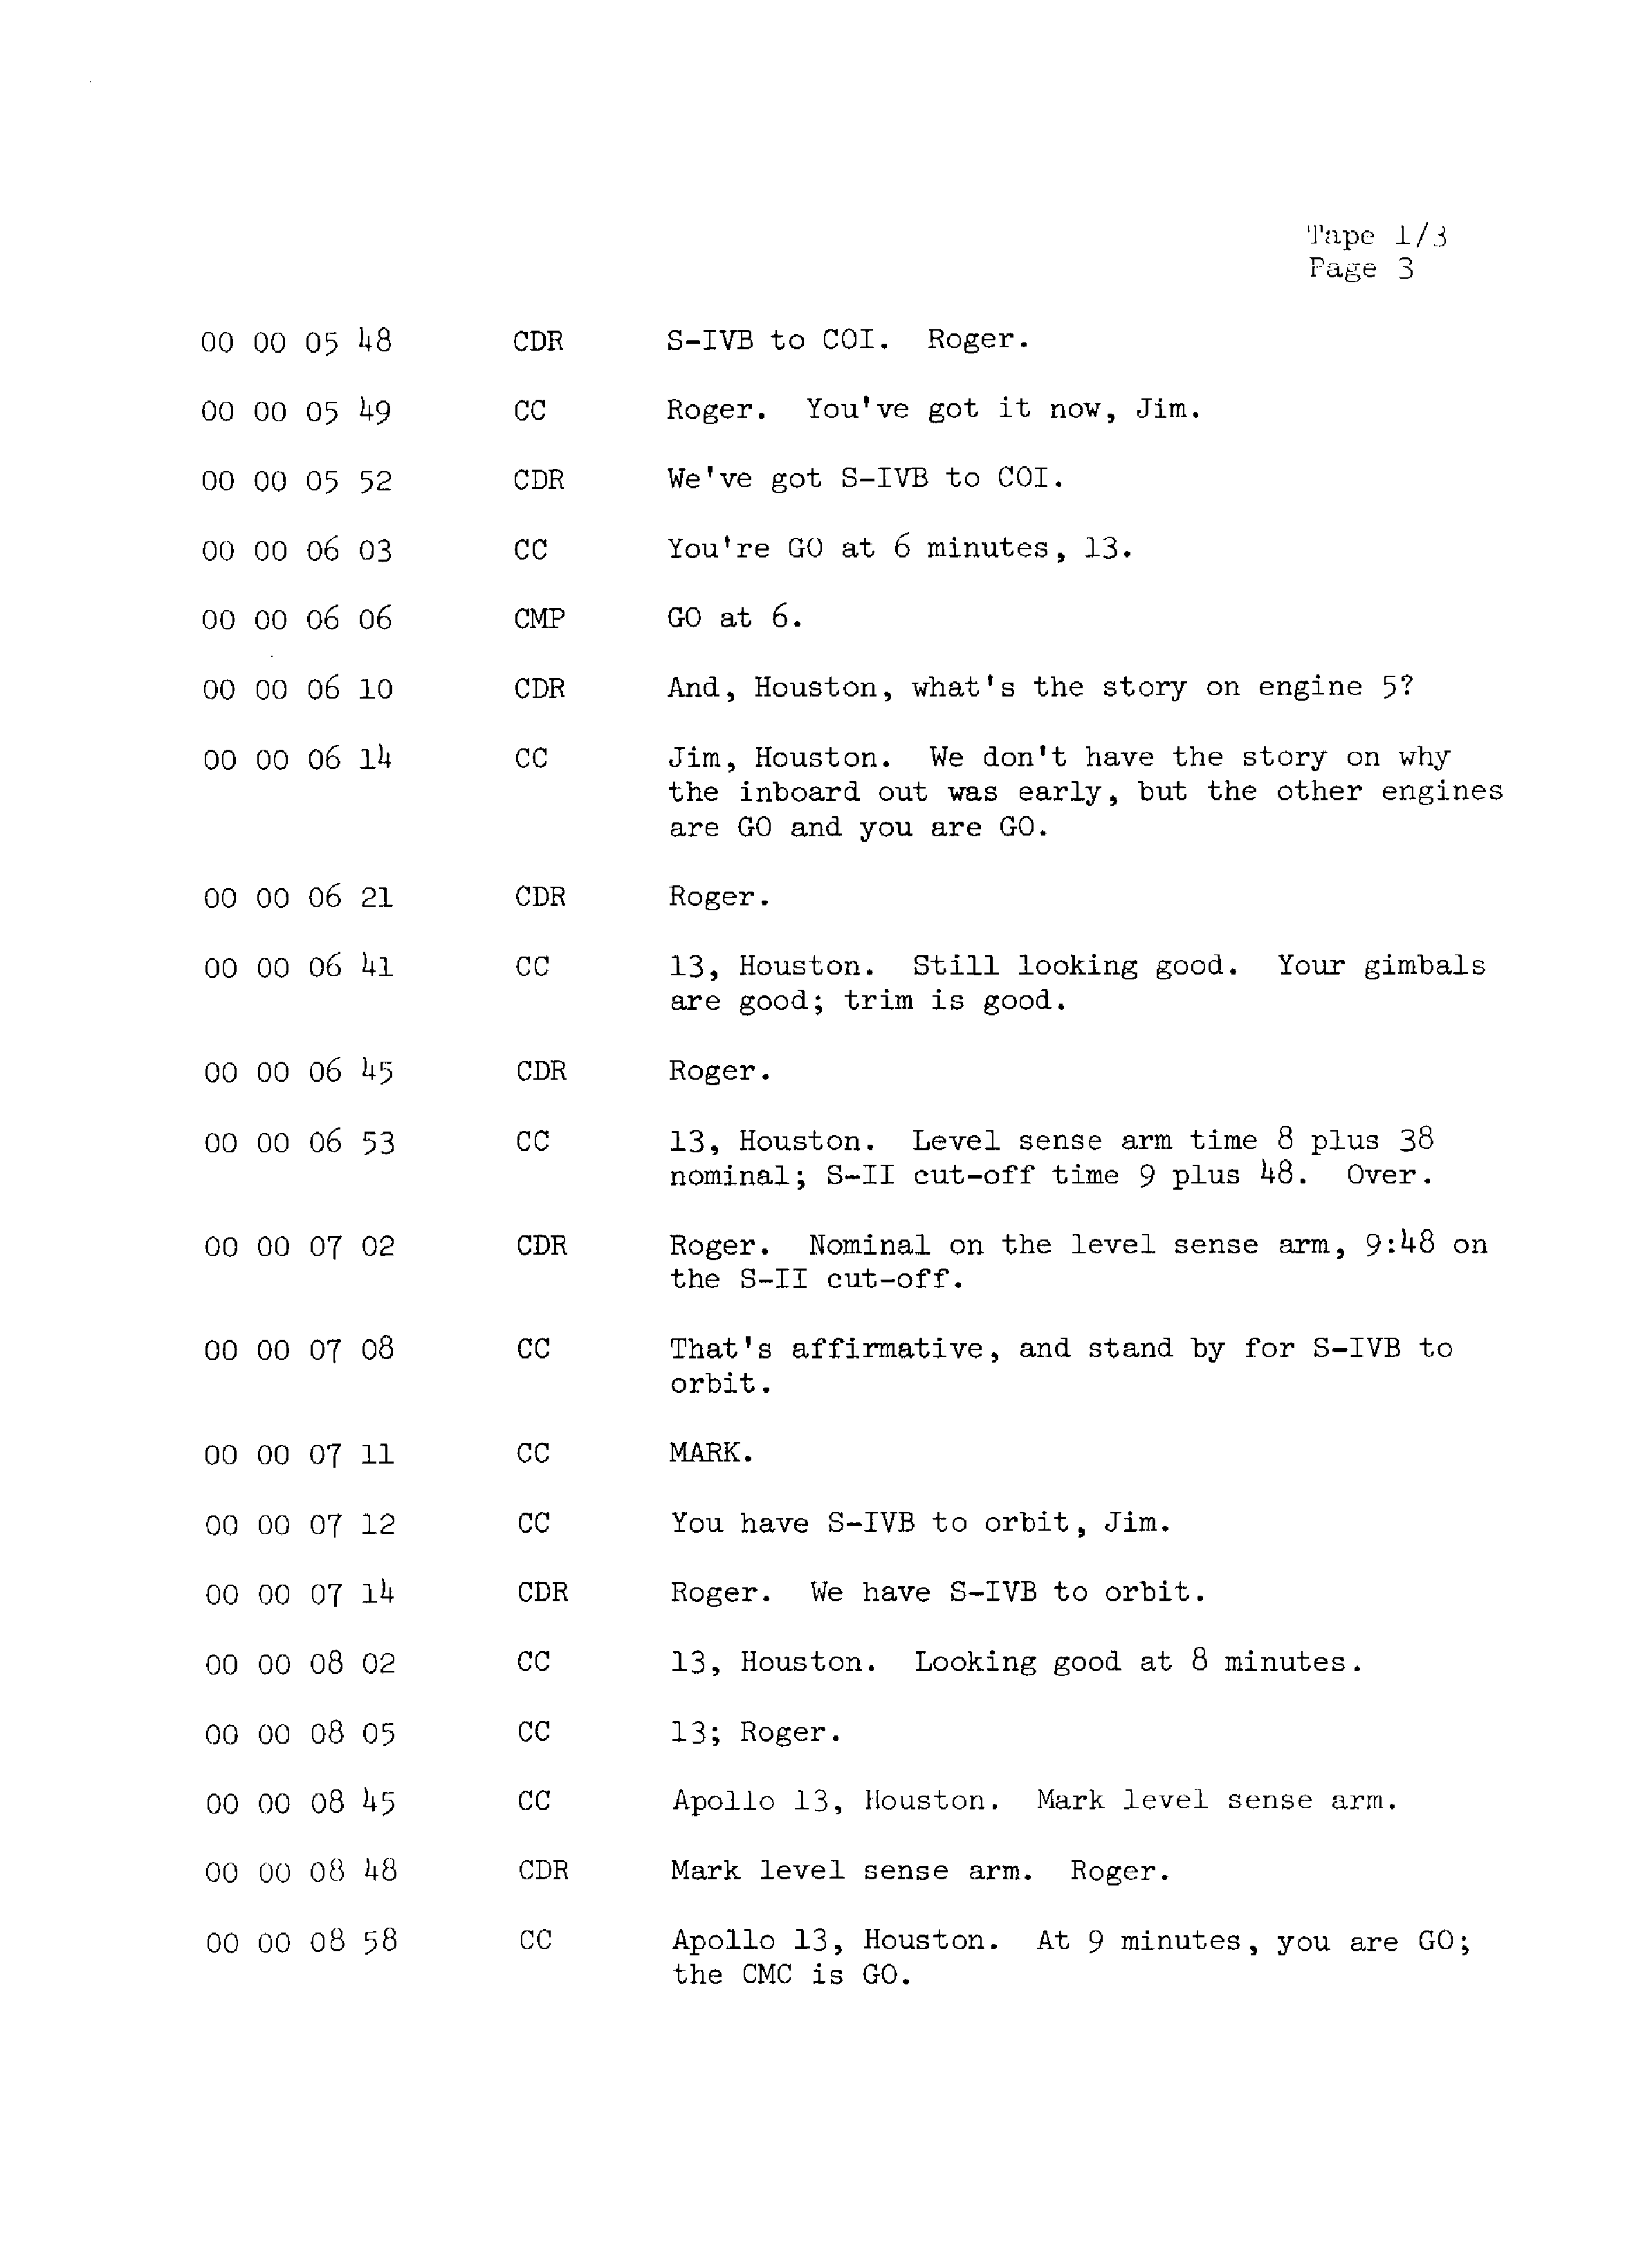 Page 10 of Apollo 13’s original transcript